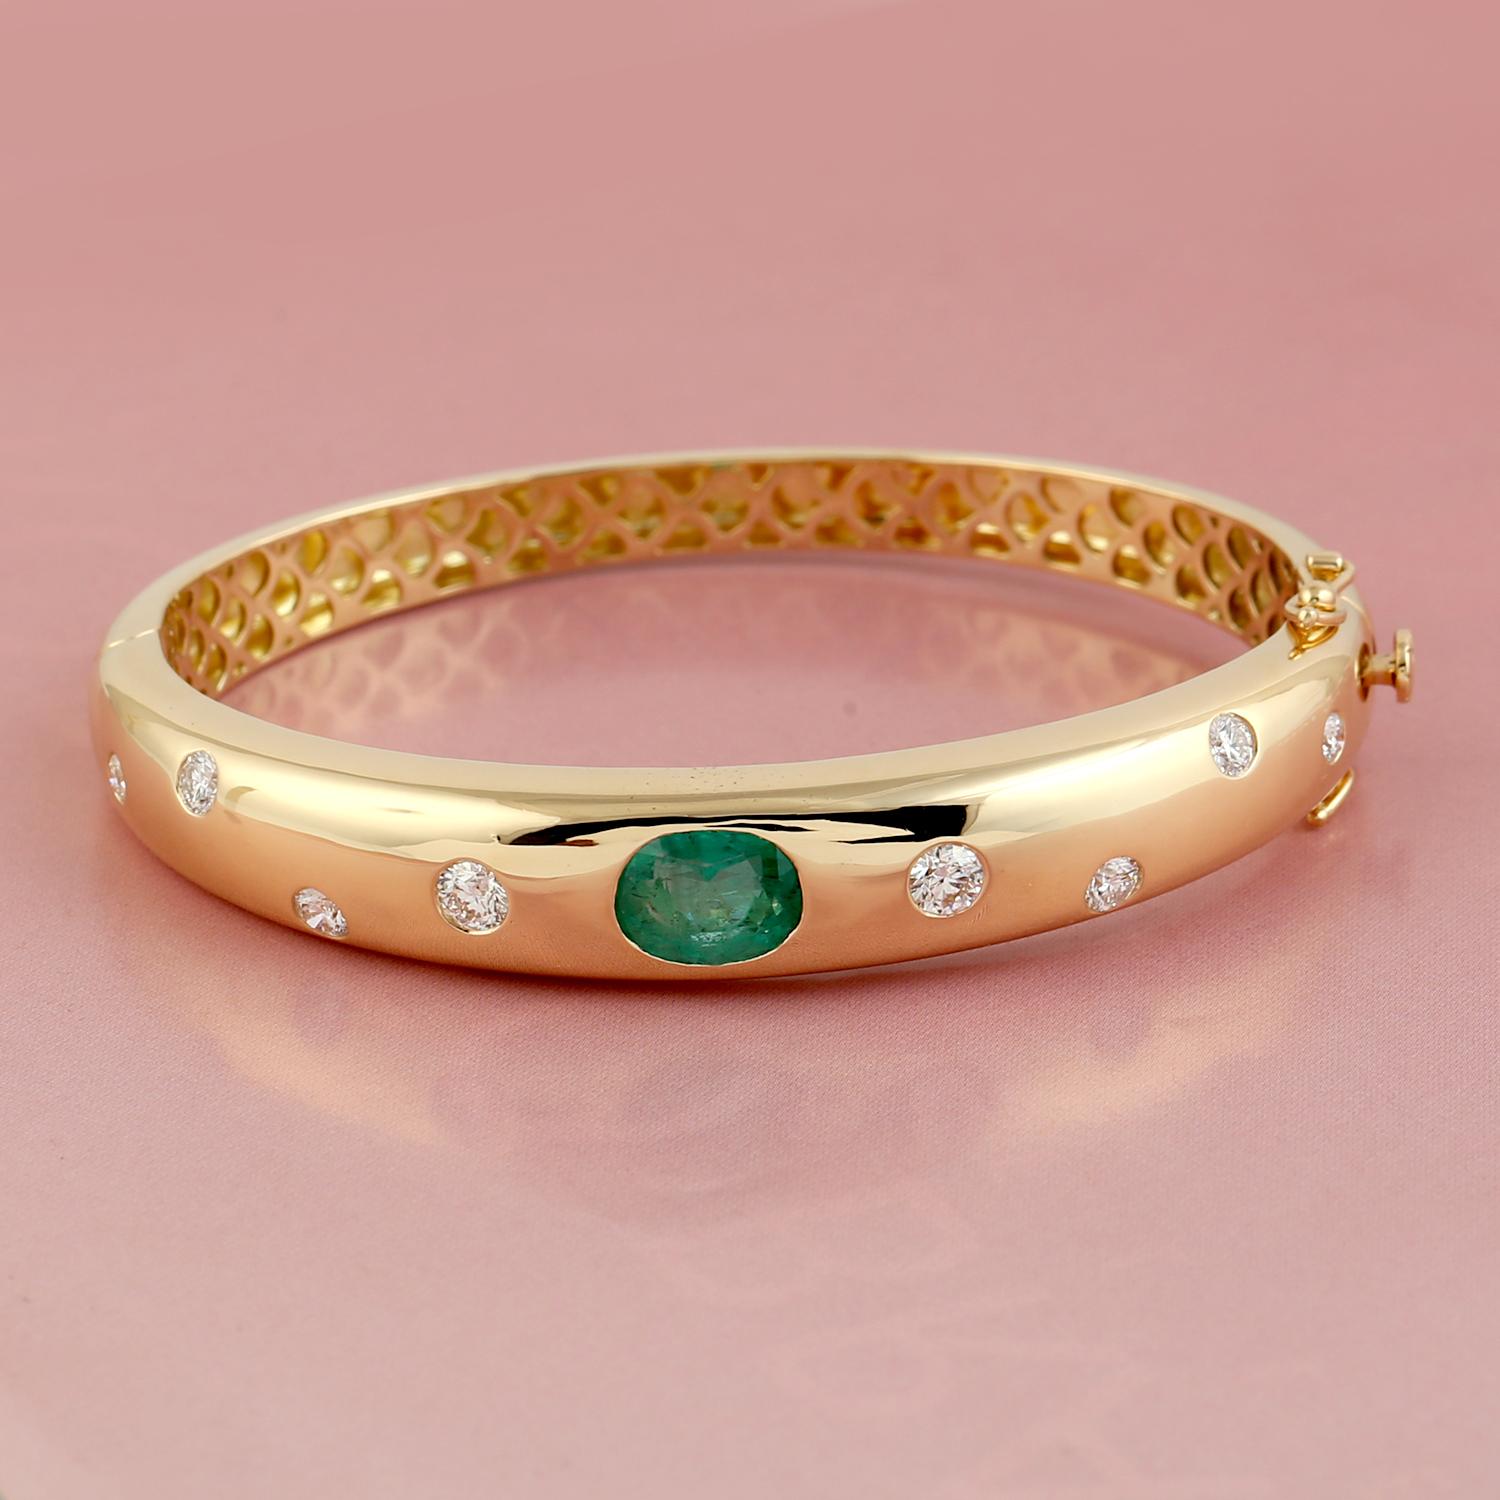 Un superbe bracelet fait à la main en or jaune 14K. Il est serti de 2,05 carats d'émeraude et de 0,97 carats de diamants étincelants. Portez-le seul ou associez-le à vos pièces préférées.

Suivez la vitrine de MEGHNA JEWELS pour découvrir la